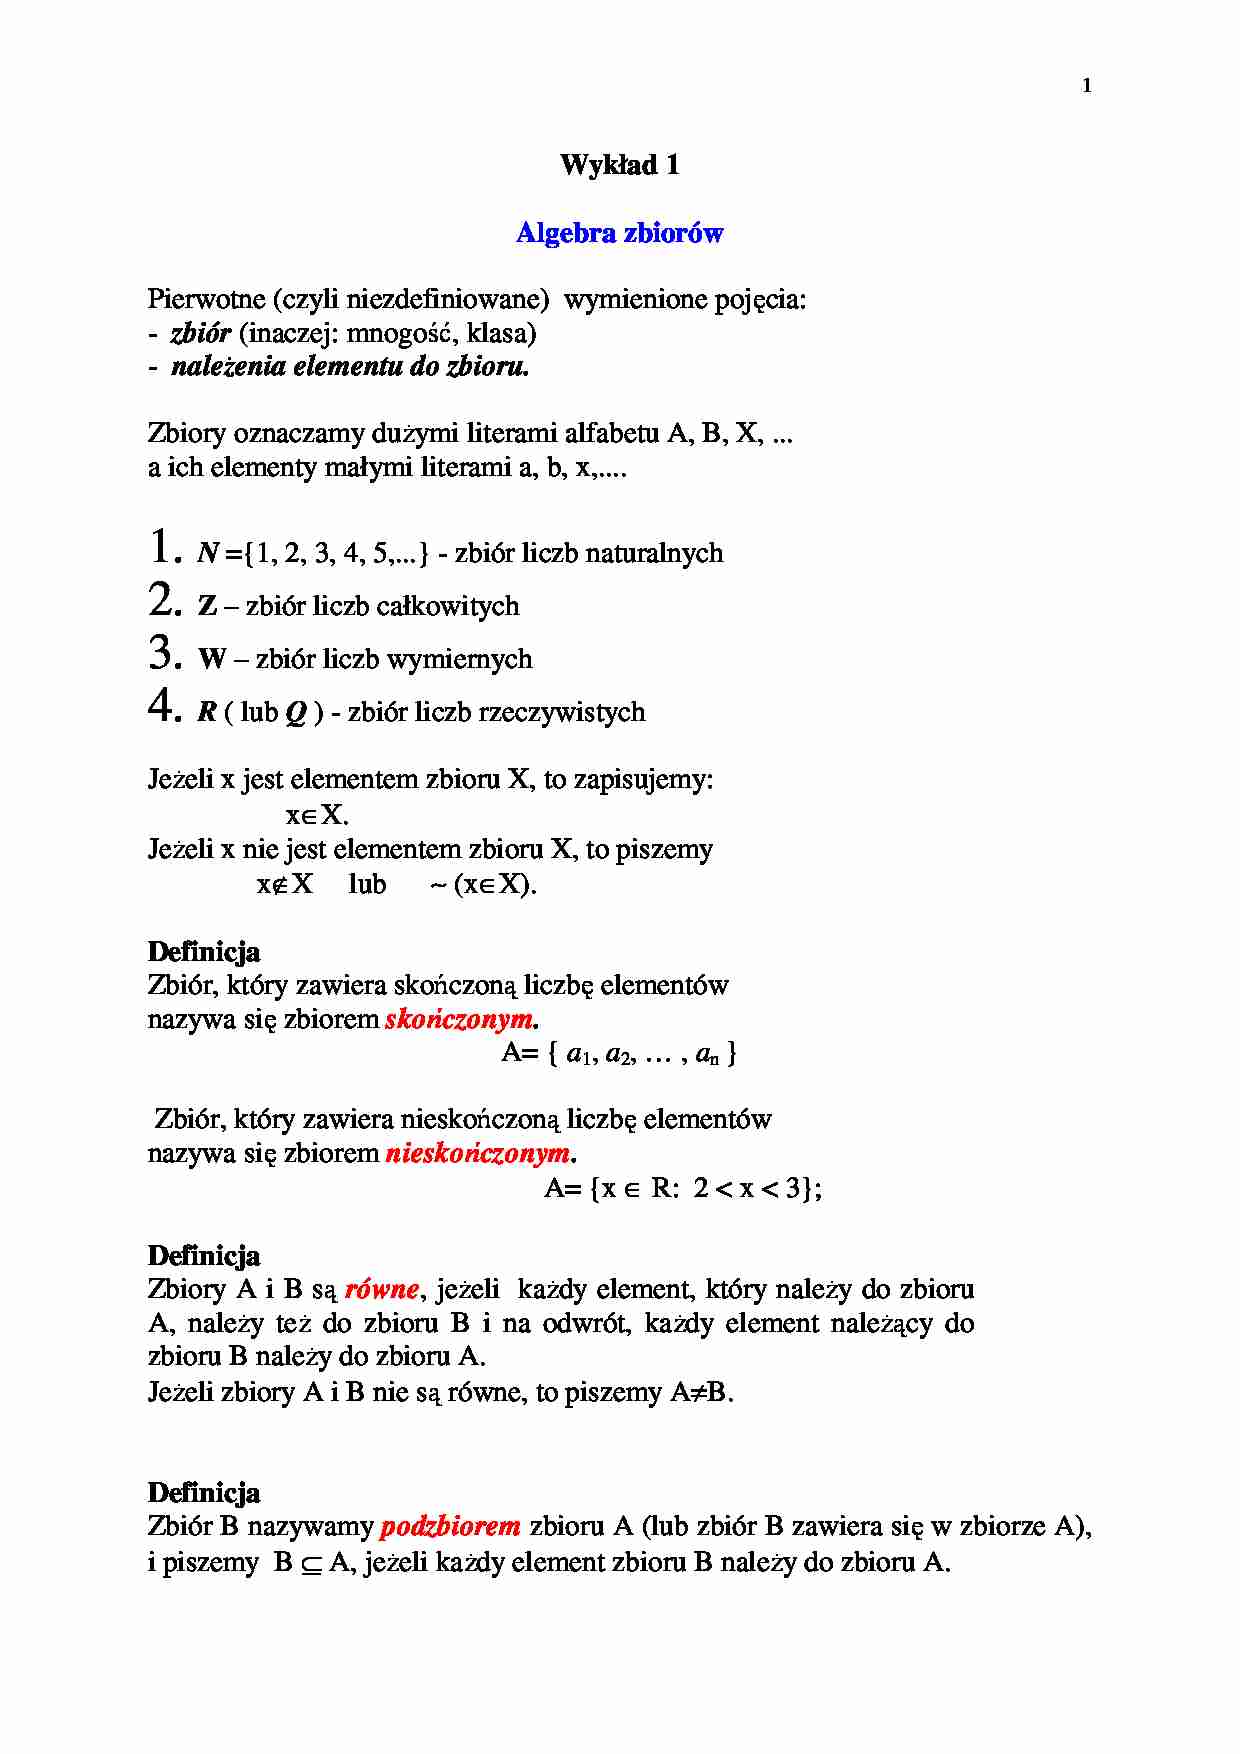 Algebra zbiorów - wykład - strona 1